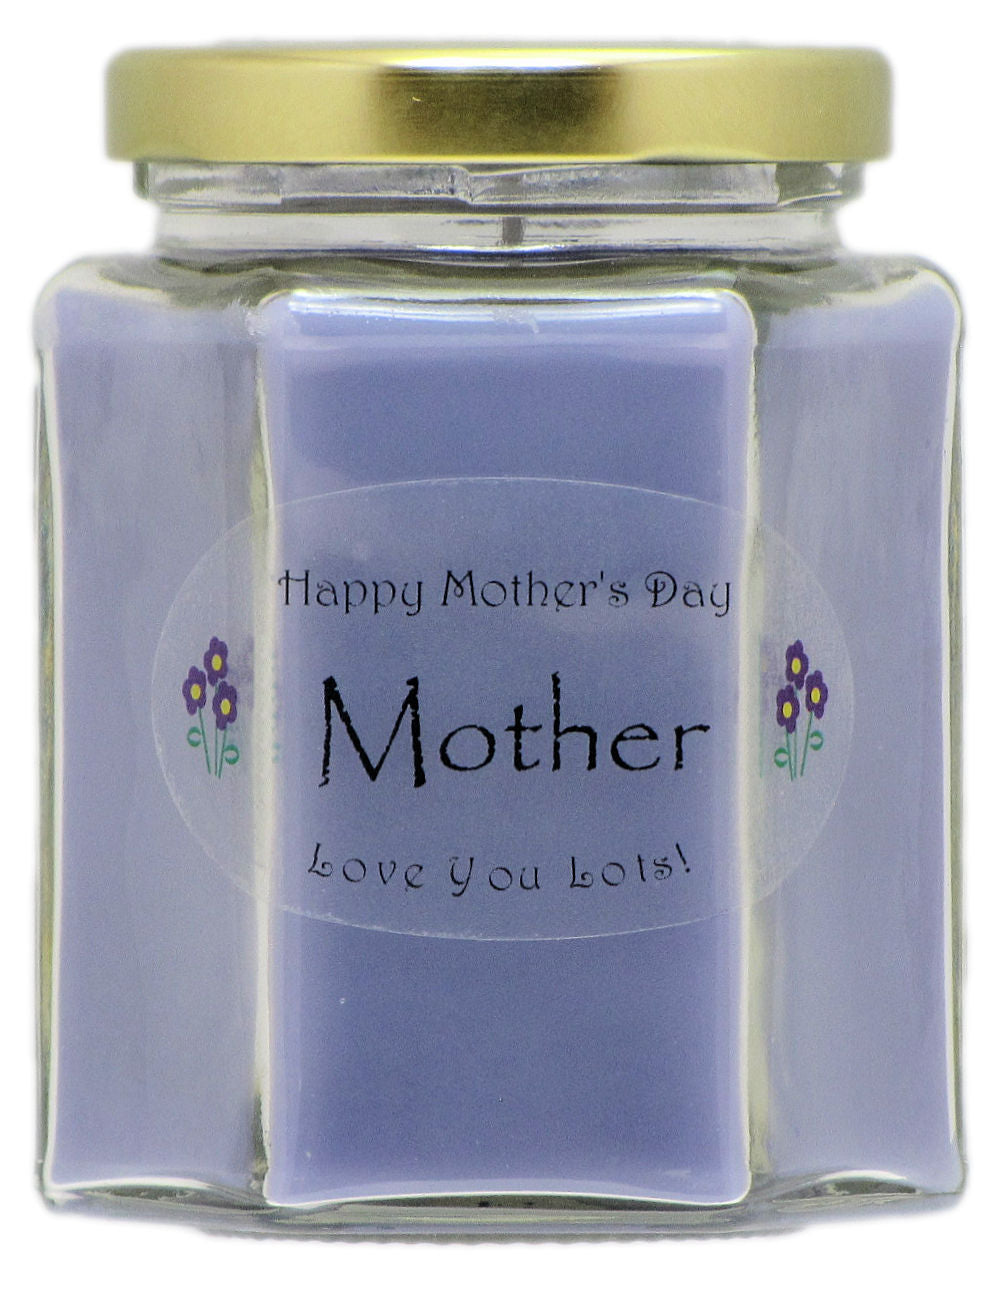 https://justmakesscentscandles.com/cdn/shop/products/Mother_-_Lavender.jpg?v=1522633471